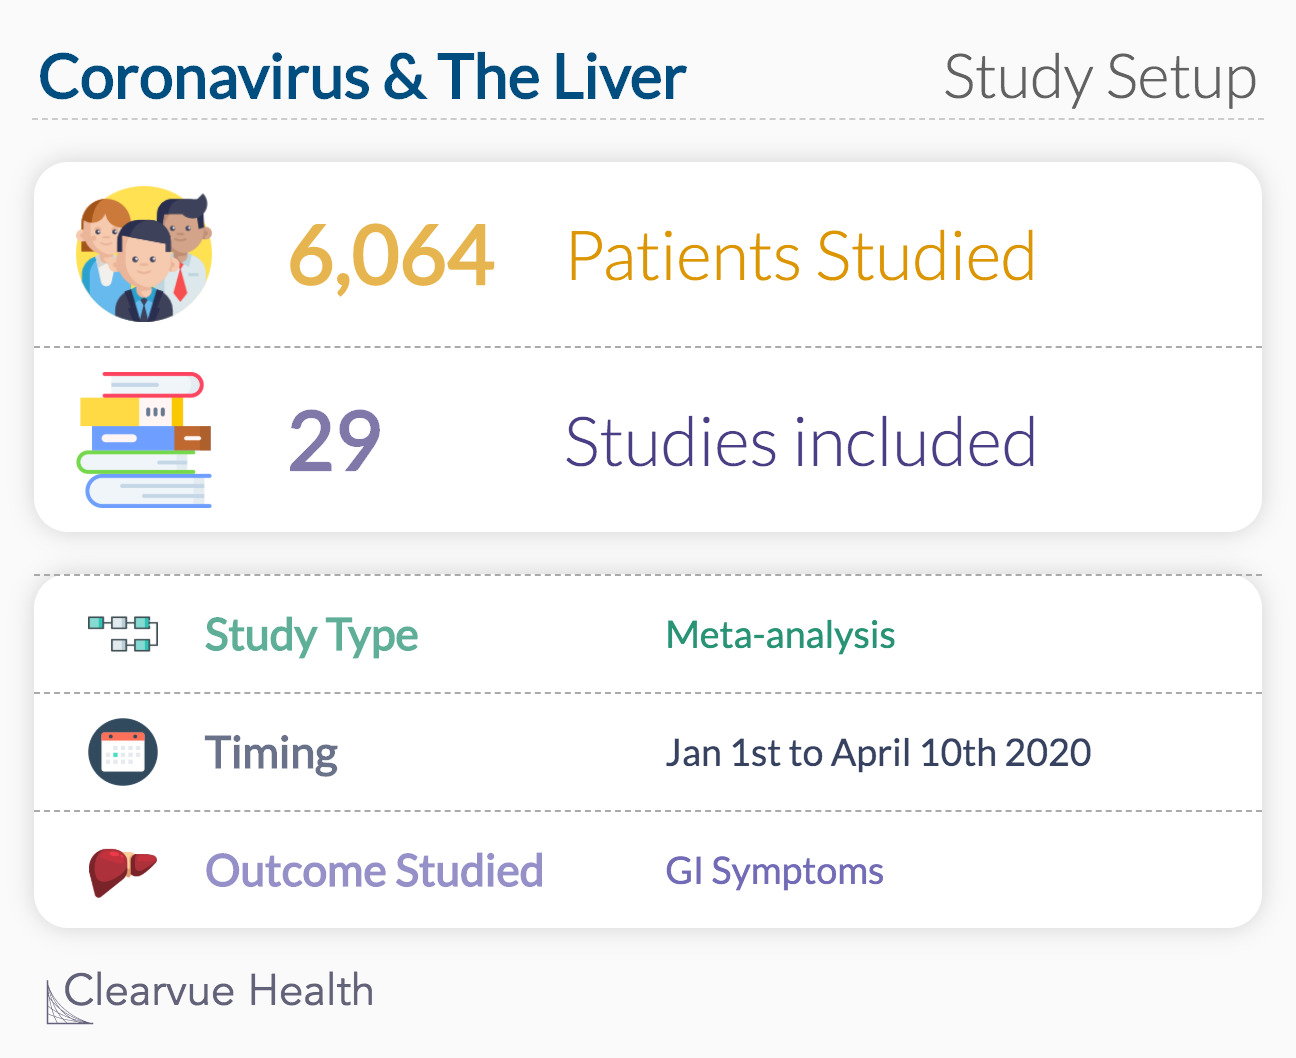 Coronavirus & the Liver Study